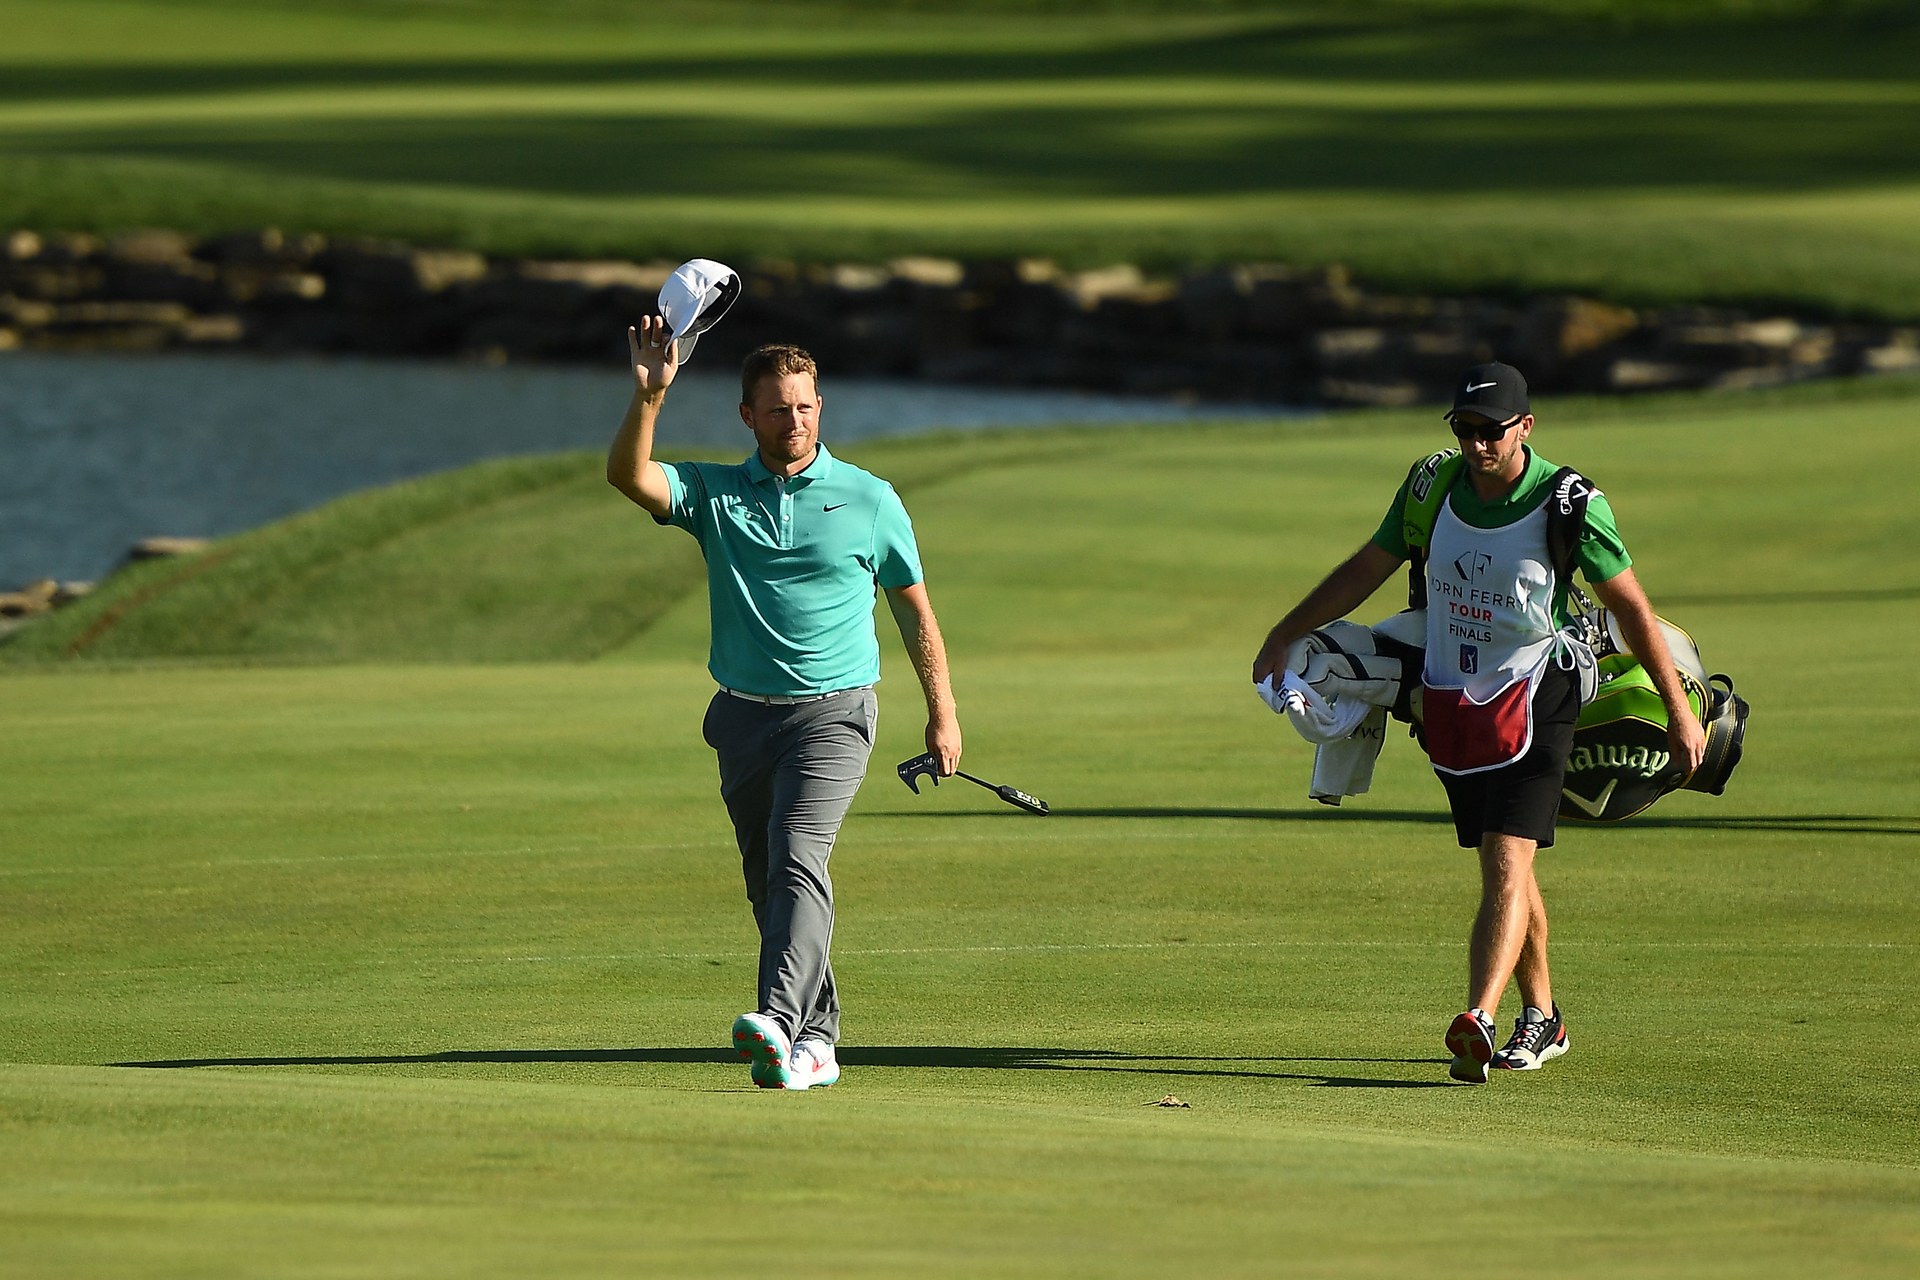 Golfer giành suất dự PGA Tour chỉ sau một sự kiện ở Korn Ferry Tour